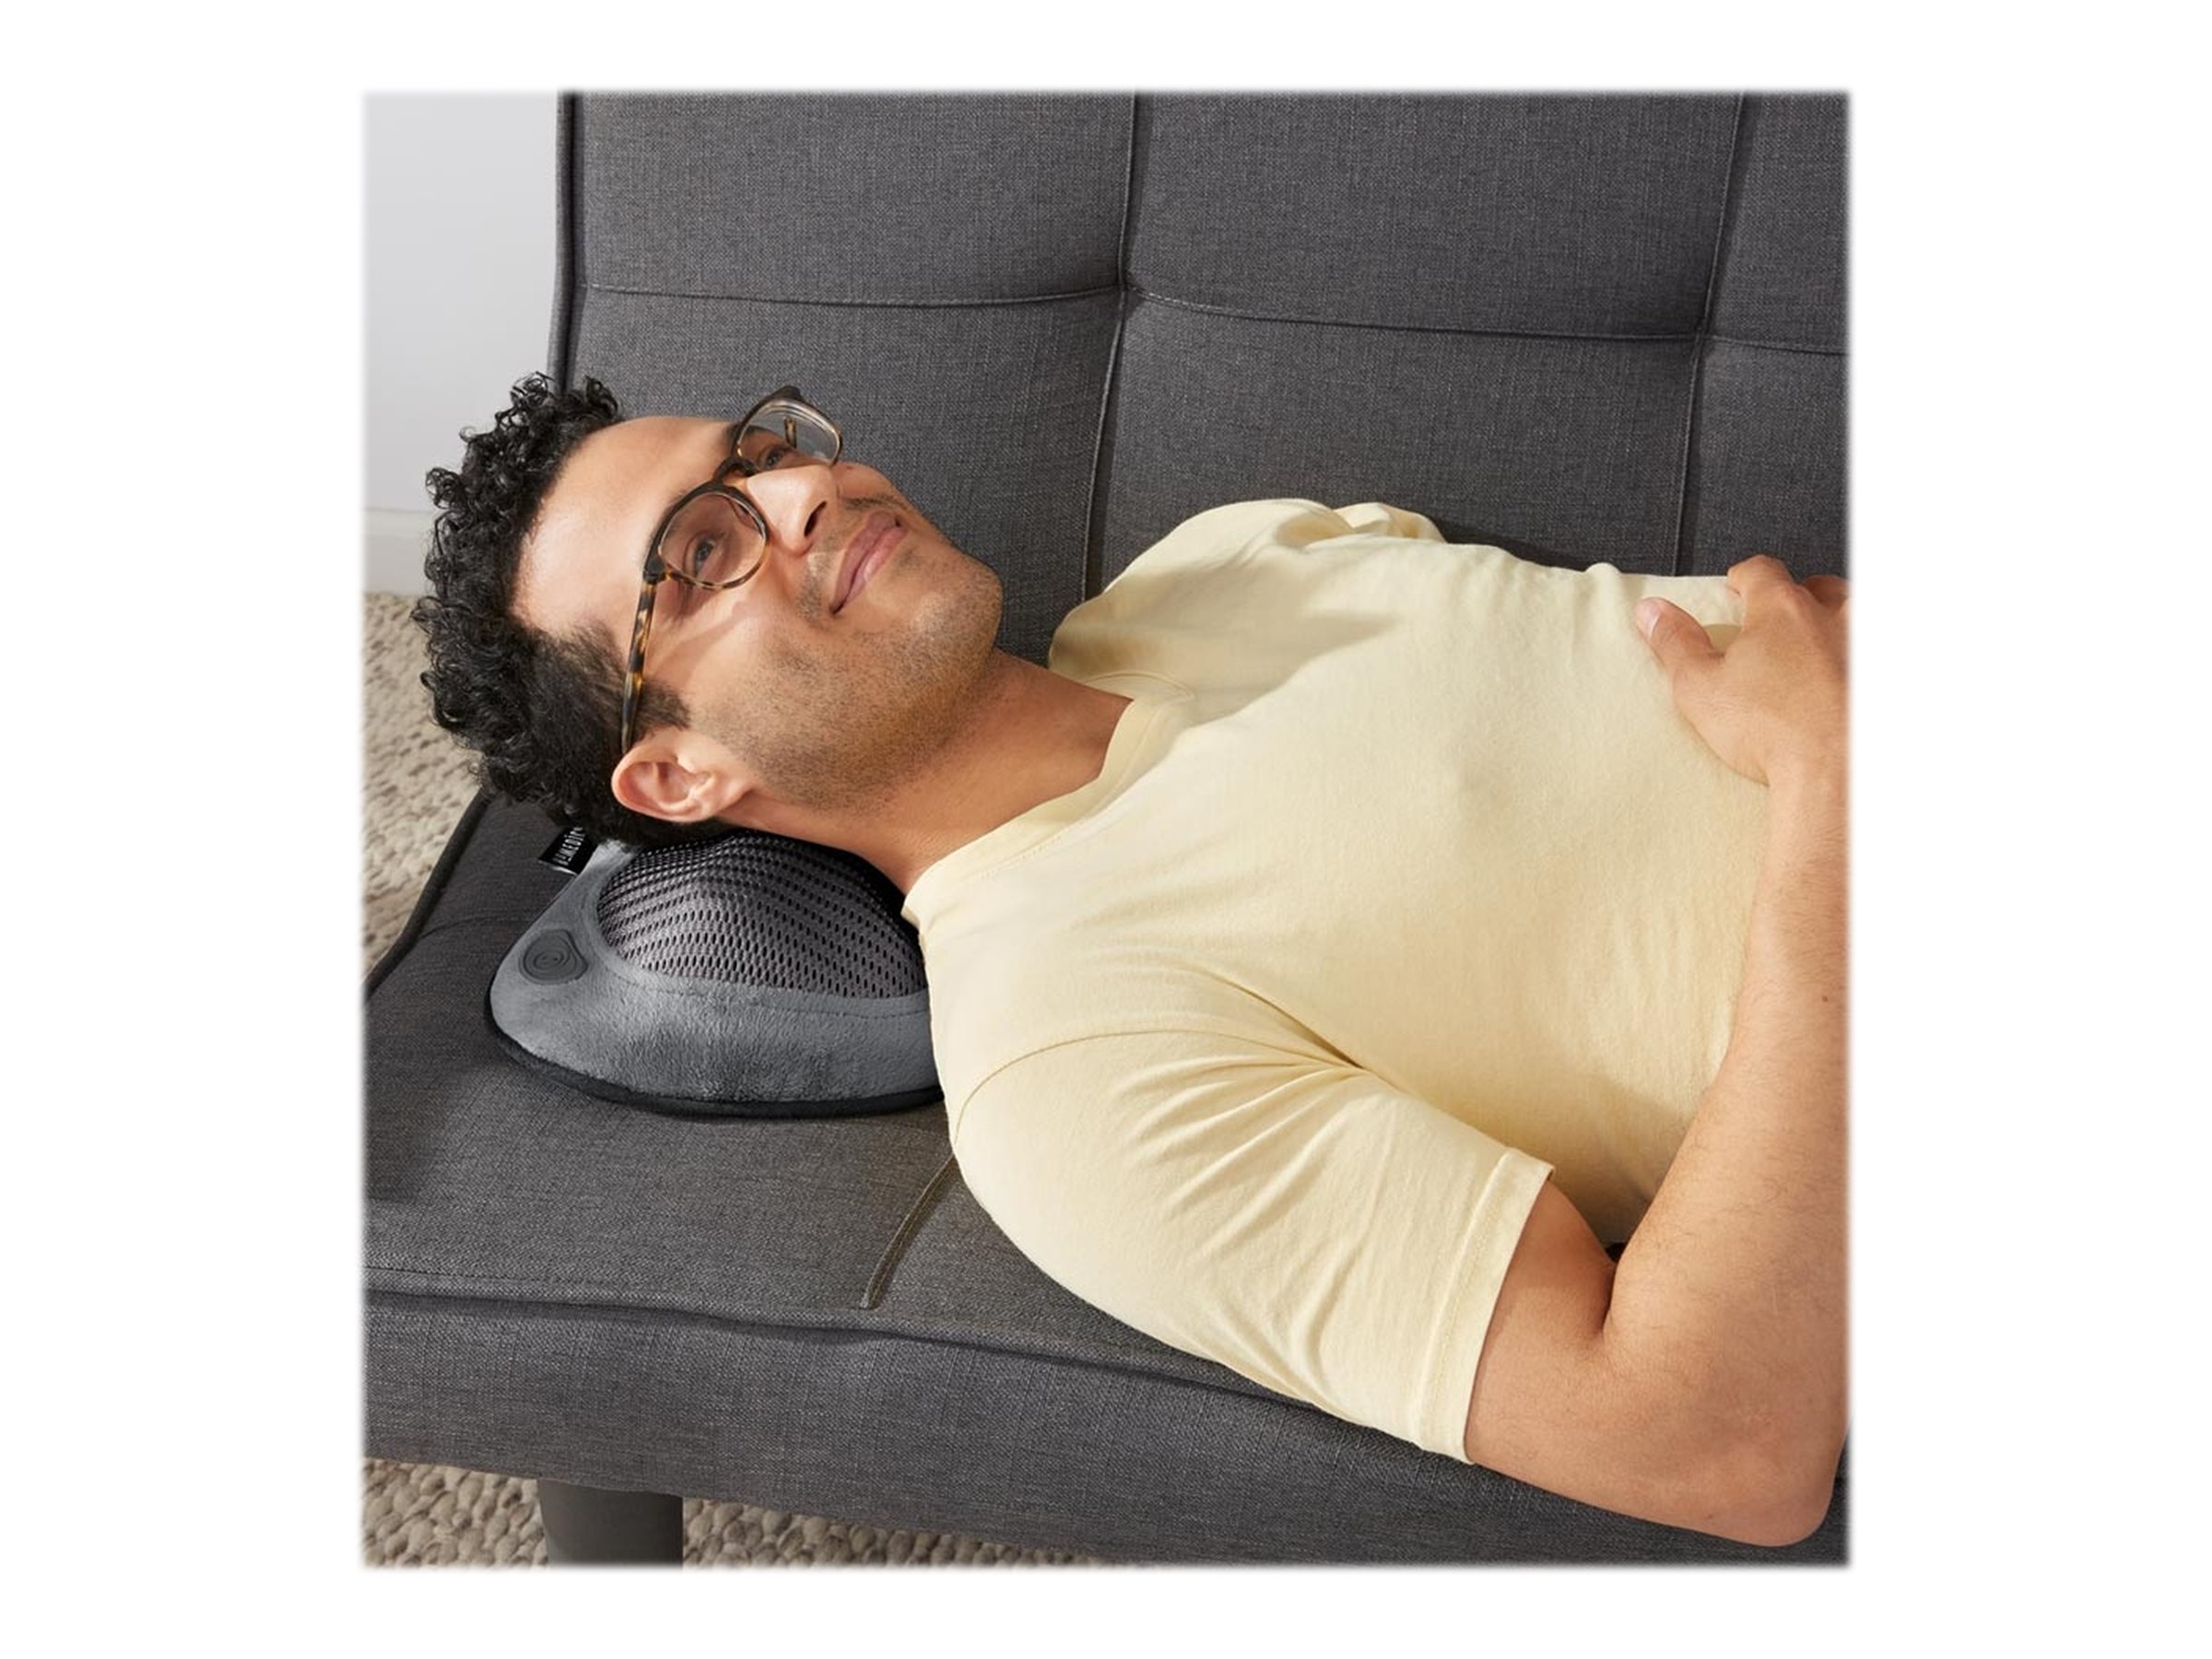 Cordless Shiatsu Massage Pillow with Heat